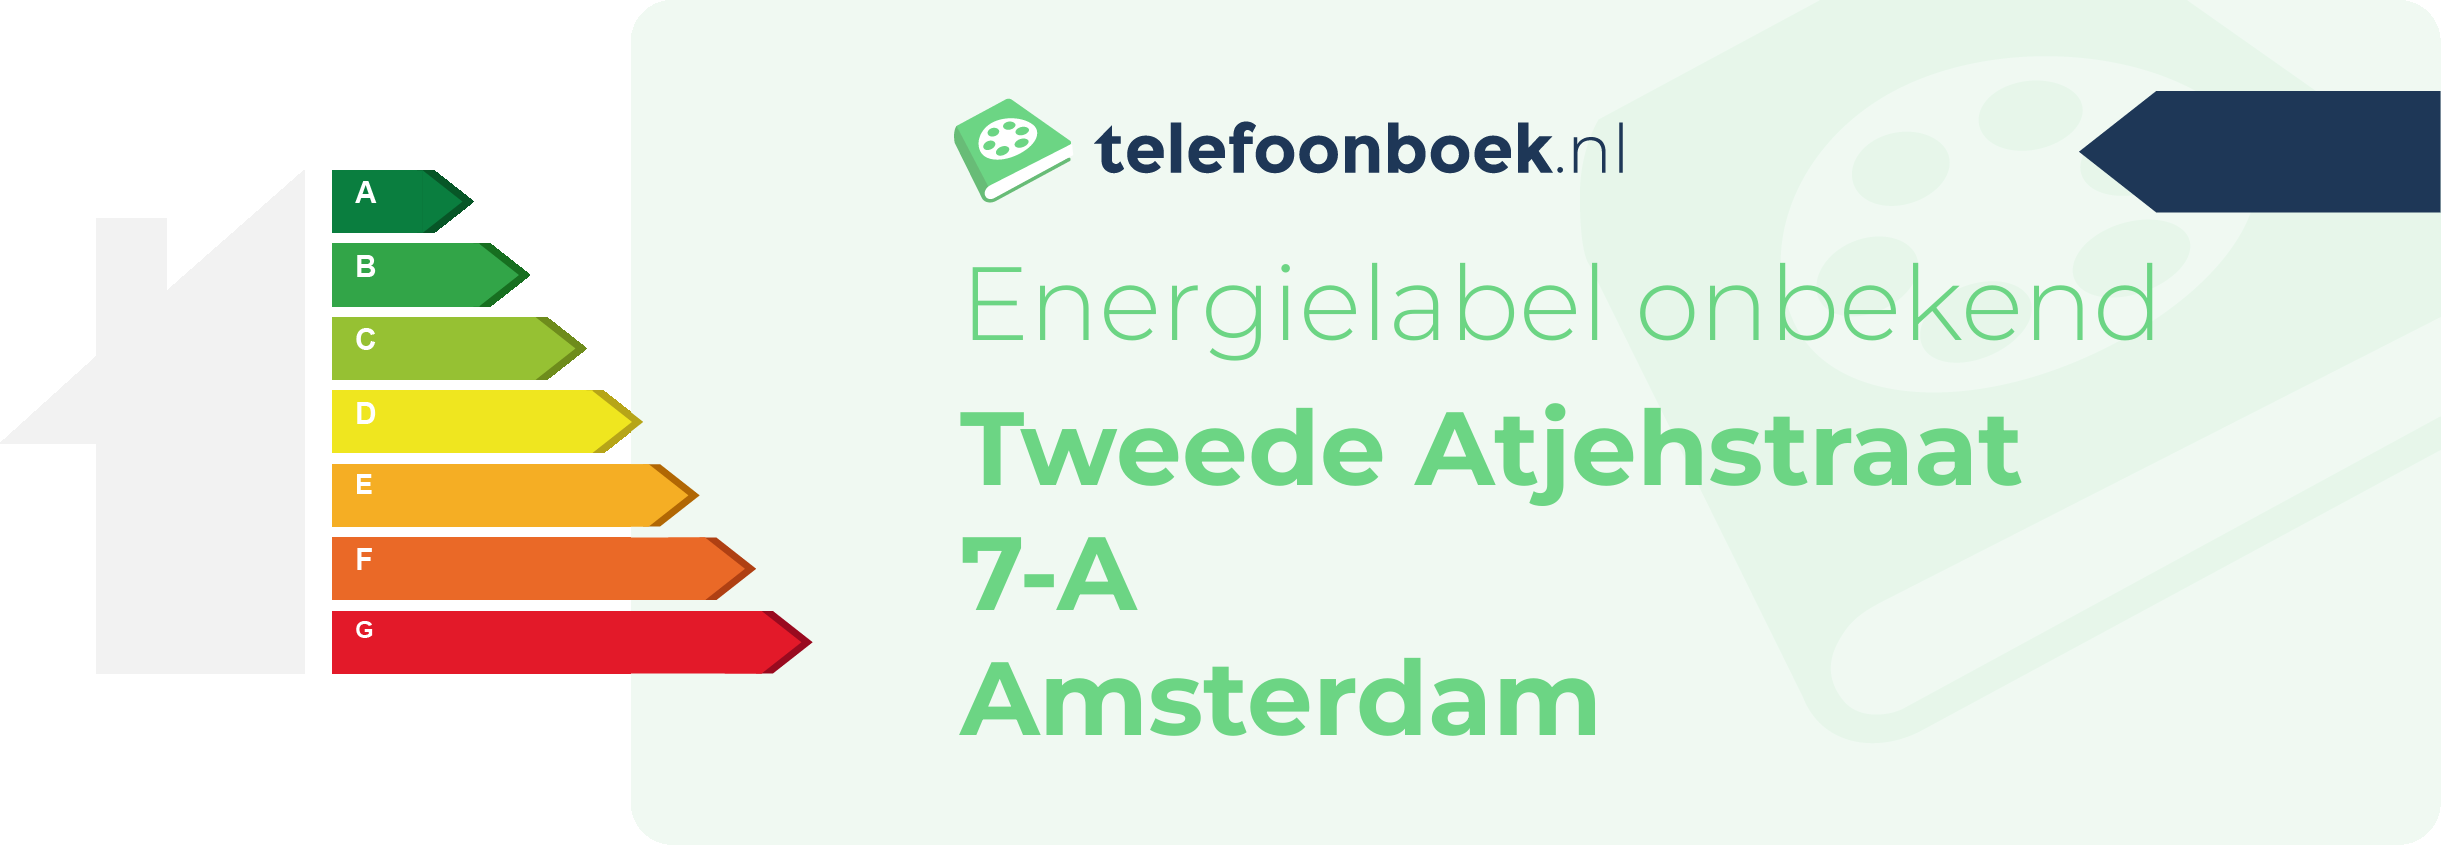 Energielabel Tweede Atjehstraat 7-A Amsterdam